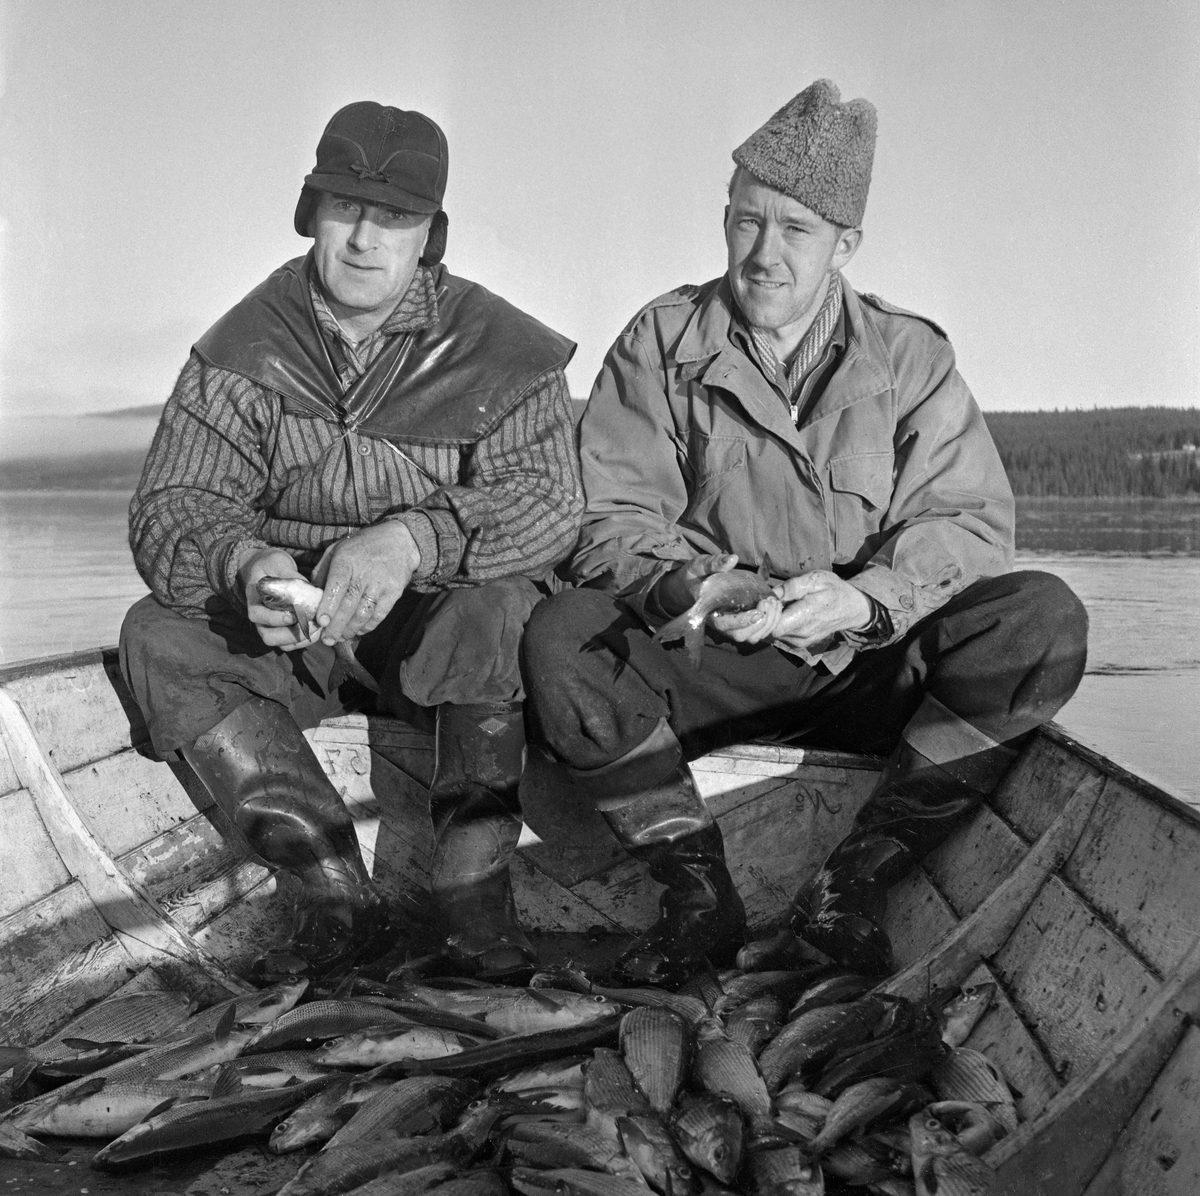 Sikfiske i Osensjøen, Hedmark. Garnfiske etter sik fra båt, to menn i båten. Bildet er trolig tatt sent på 1960-tallet eller tidlig på 1970-tallet.